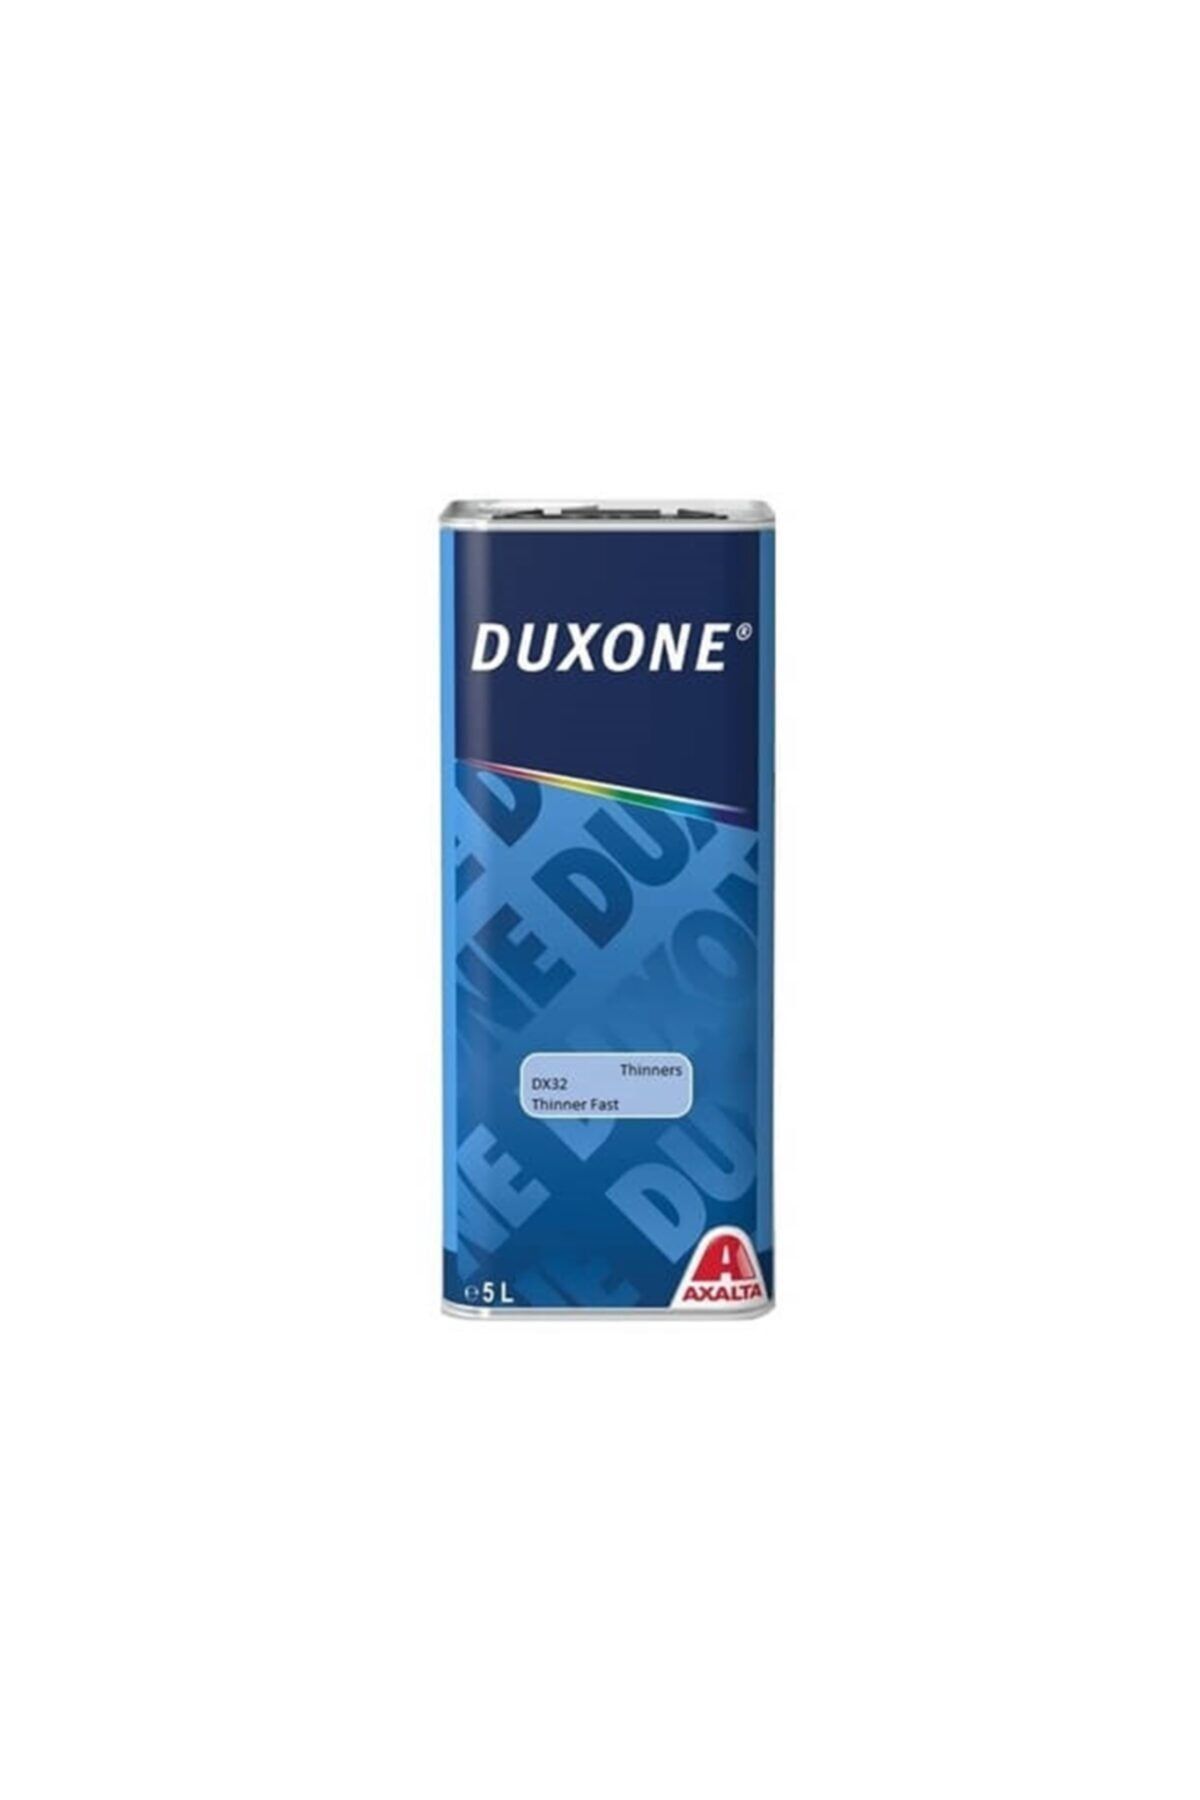 Duxone Dx32 5lt Fast Akrilik Hızlı Tiner